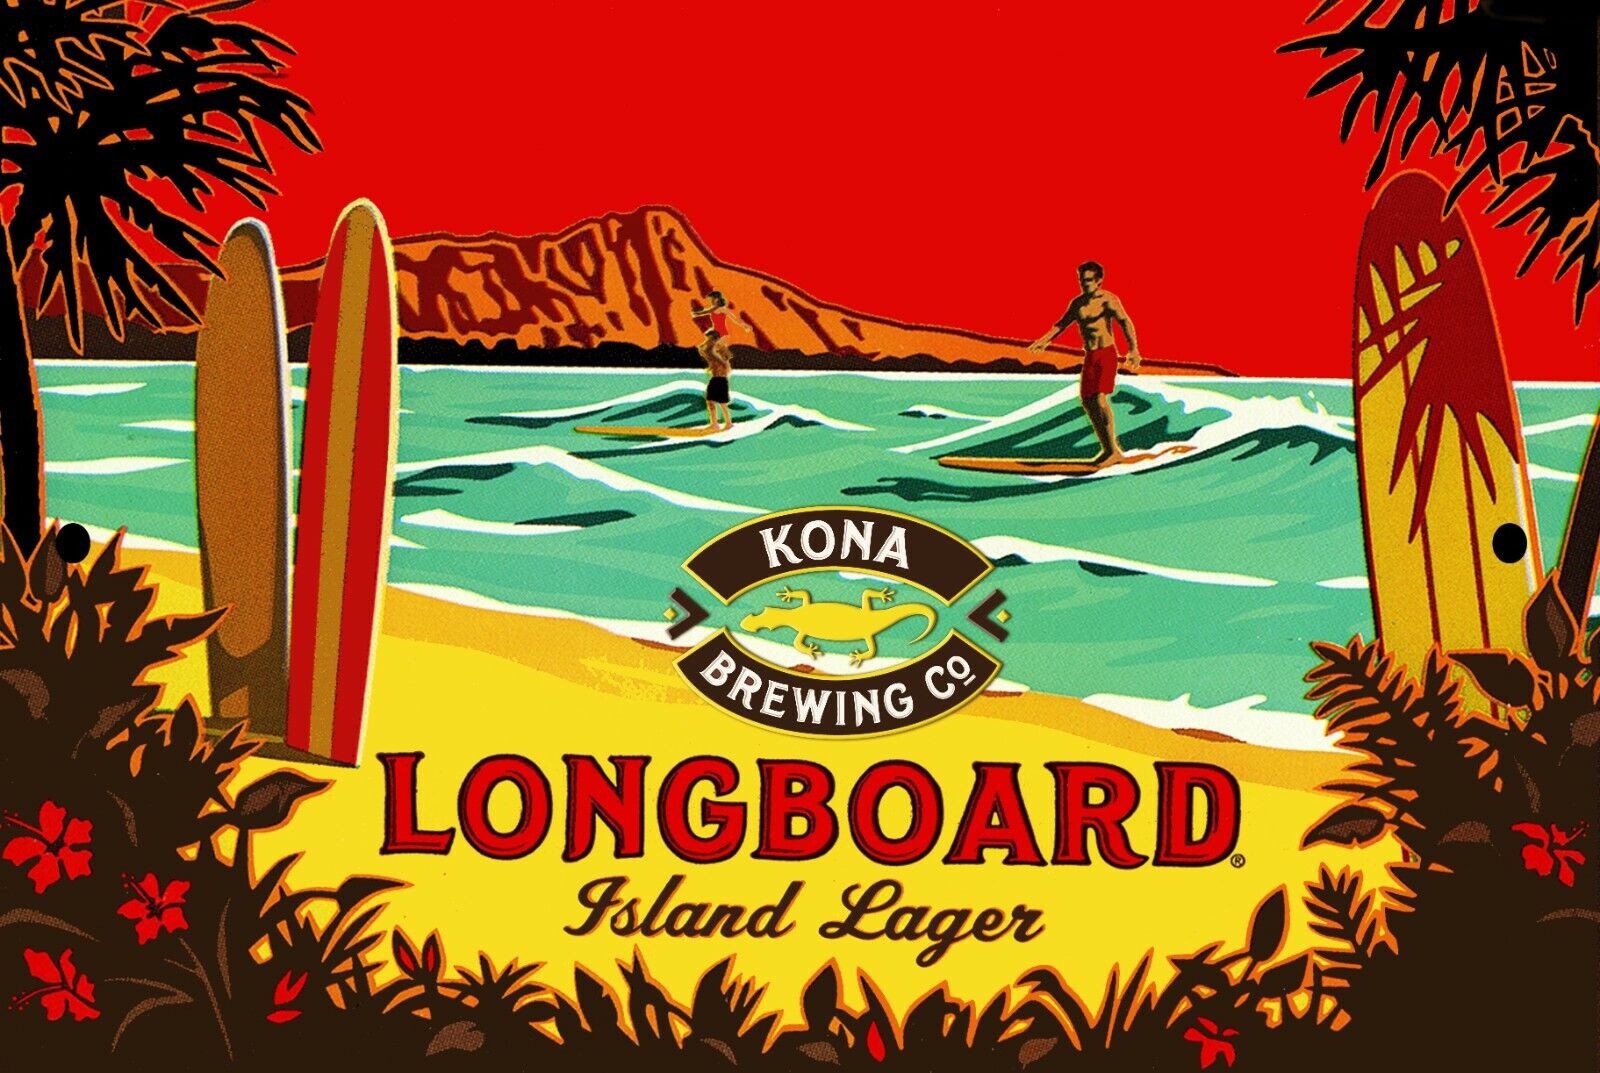 Longboard Island Lager - Liquid Aloha - Kona Brewing Beer metal sign NEW 8x12